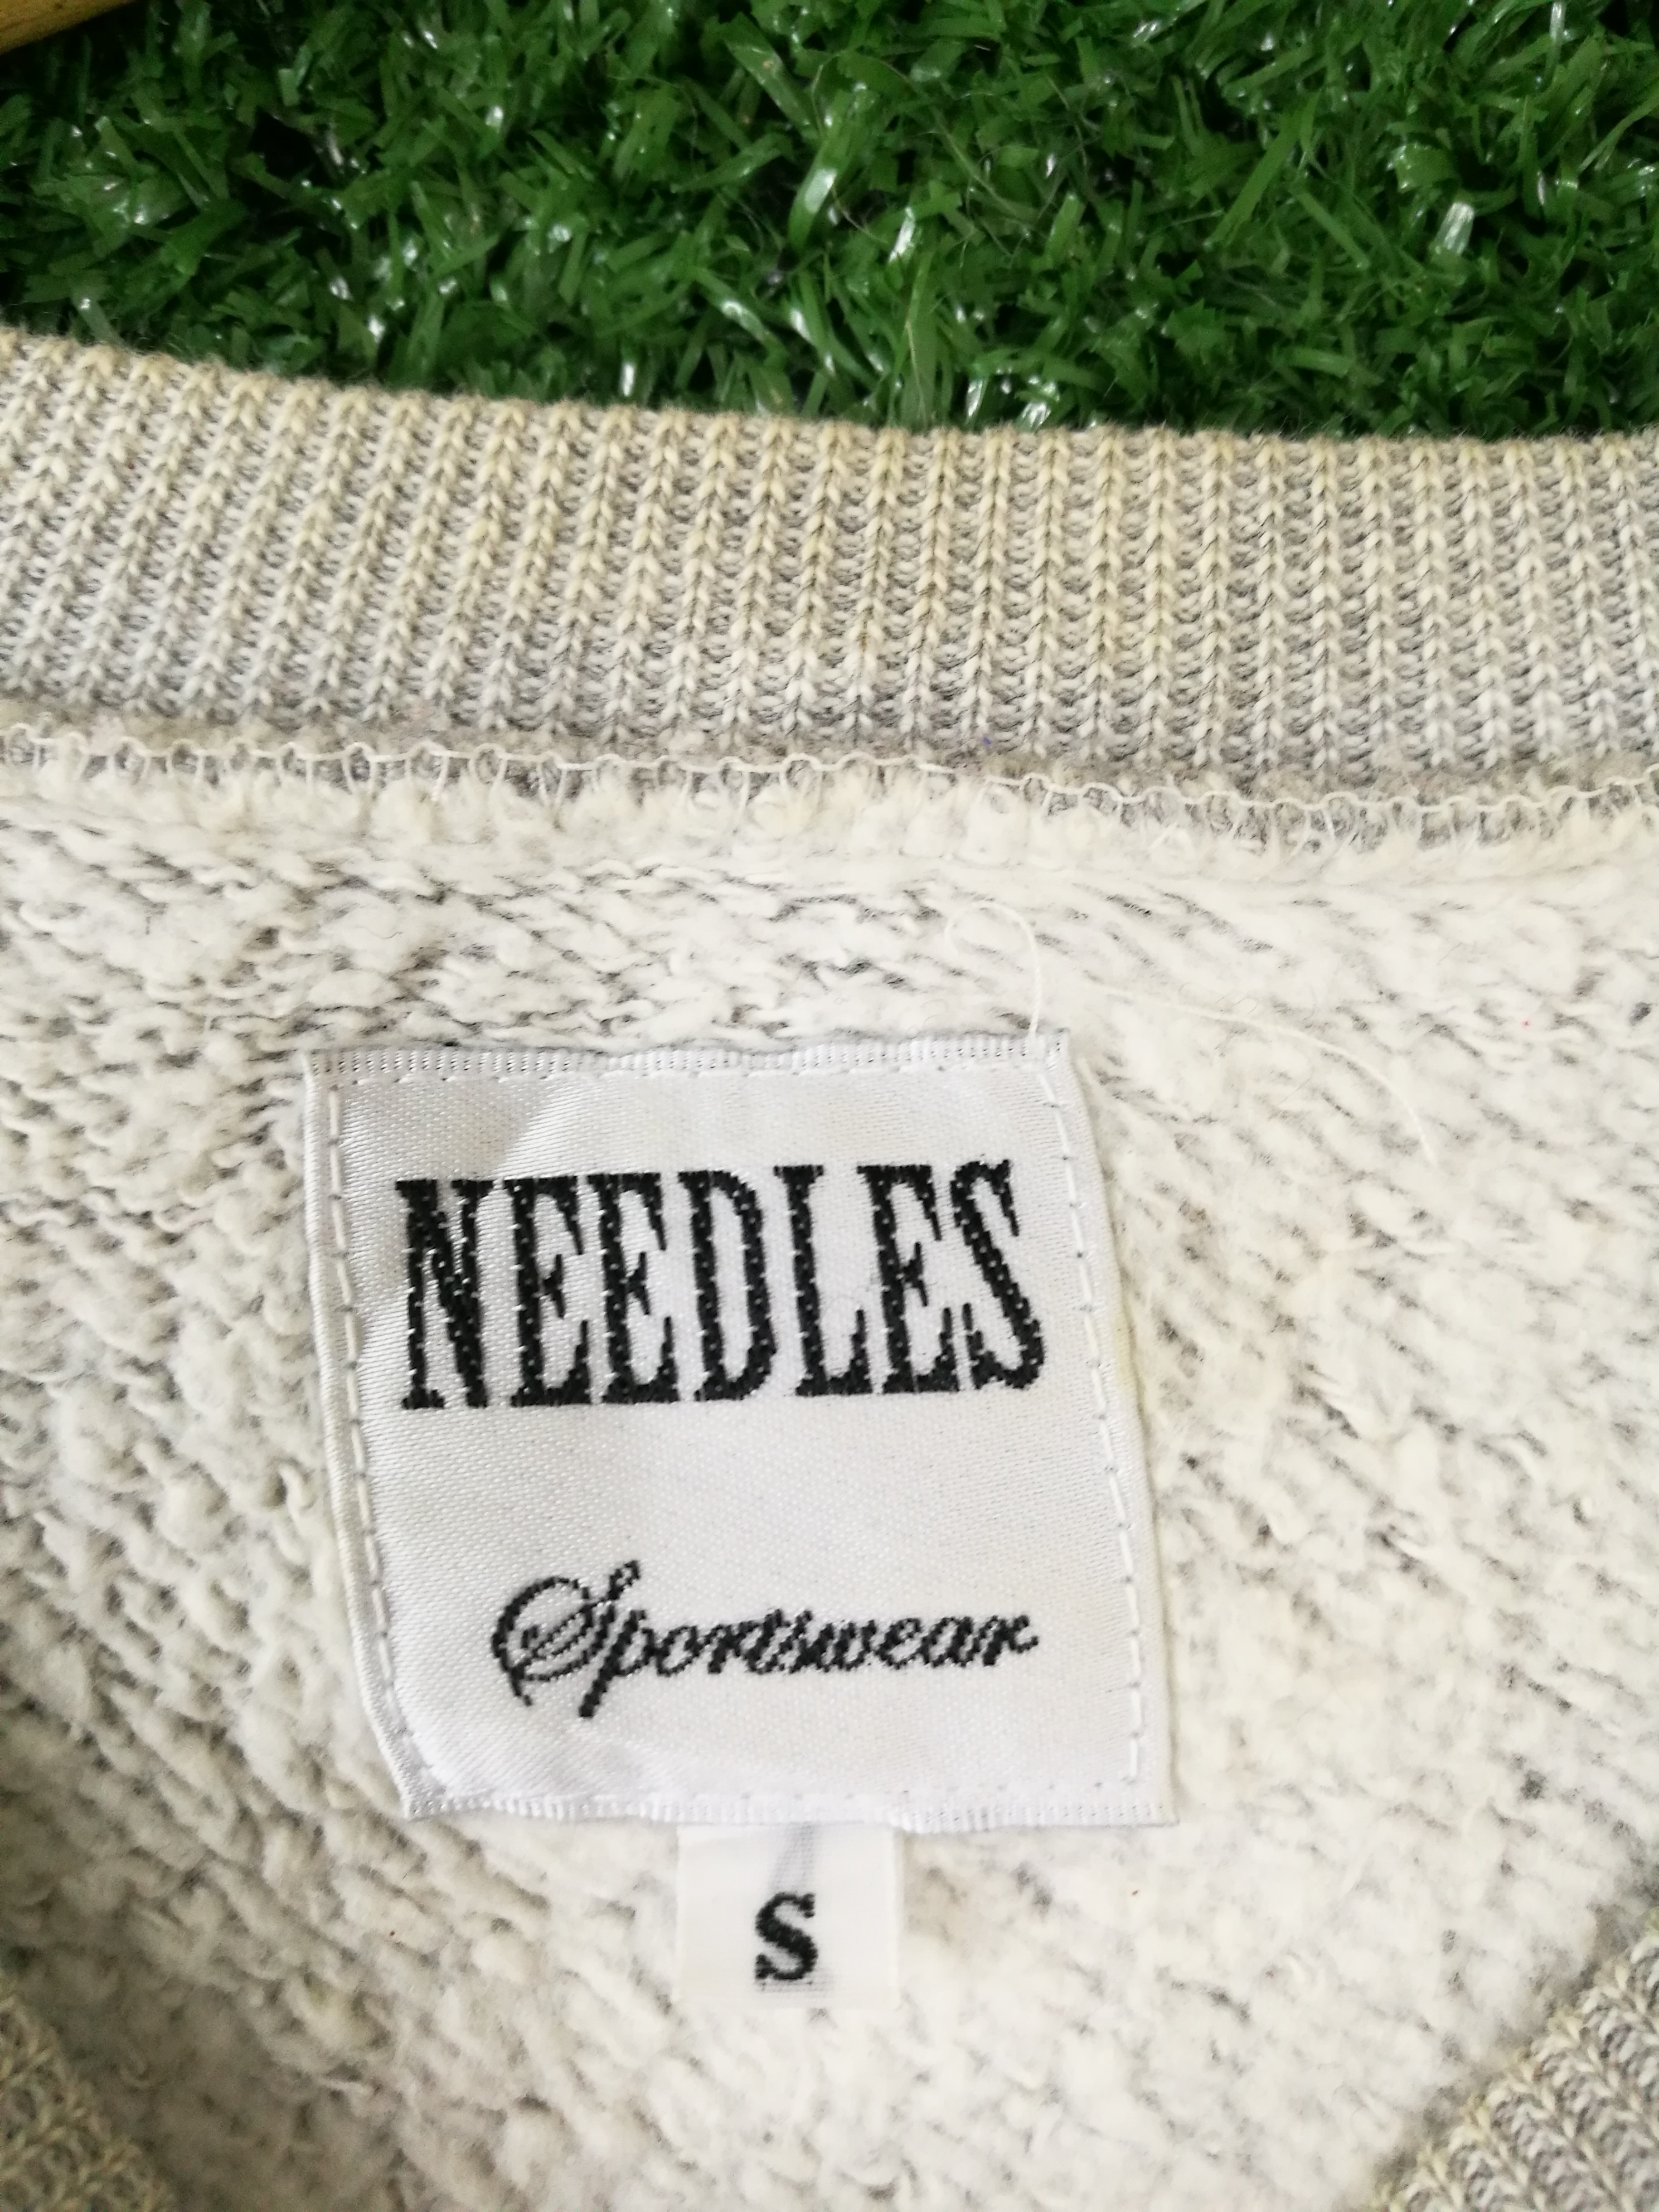 Needles sportwear sweatshirt - 4